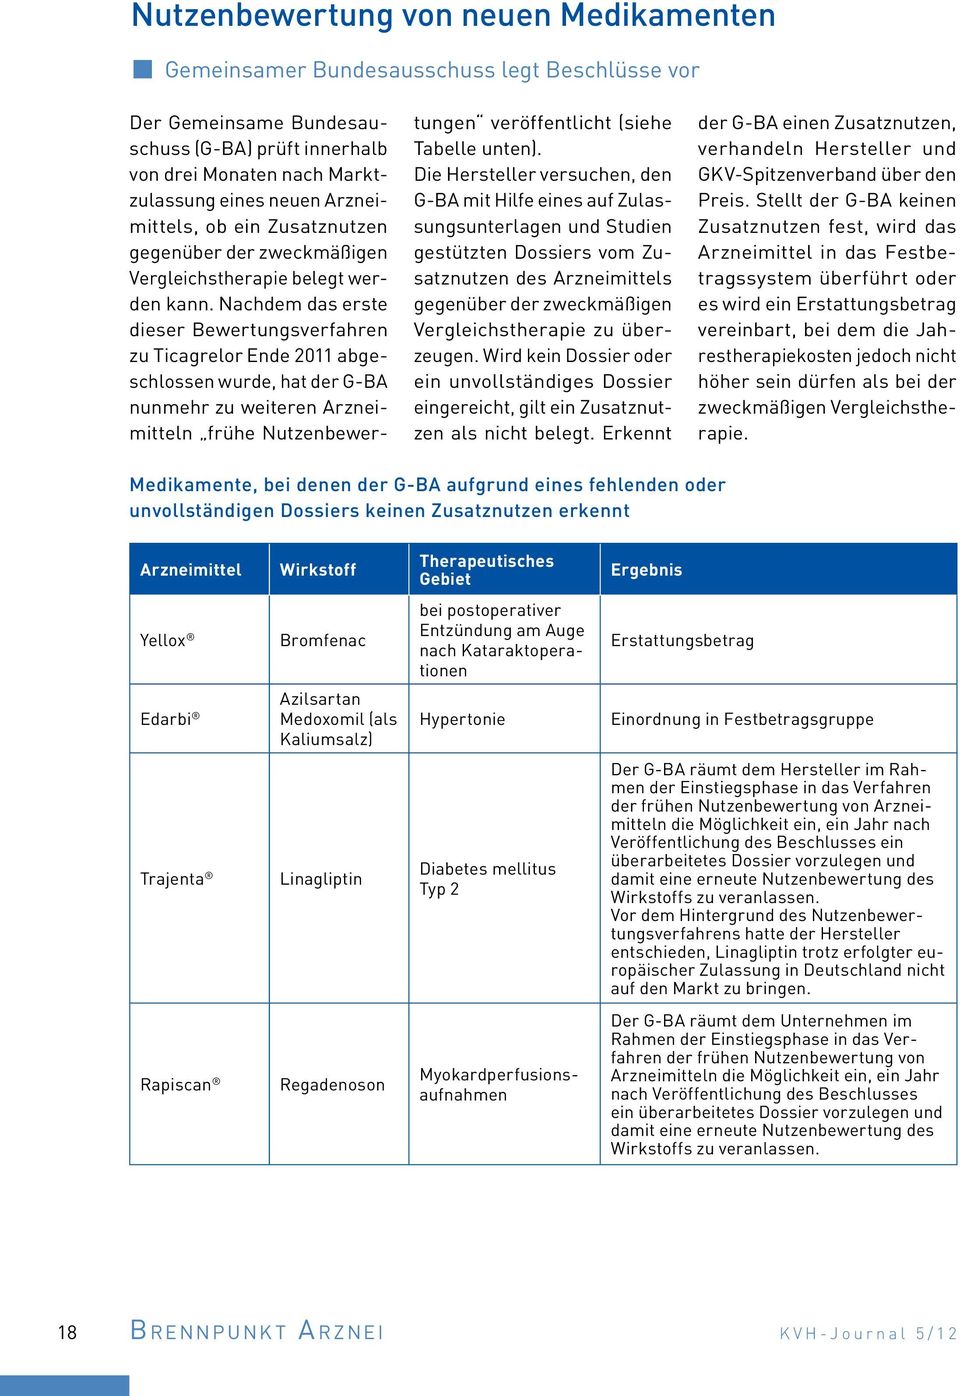 Nachdem das erste dieser Bewertungsverfahren zu Ticagrelor Ende 2011 abgeschlossen wurde, hat der G-BA nunmehr zu weiteren Arzneimitteln frühe Nutzenbewertungen veröffentlicht (siehe Tabelle unten).